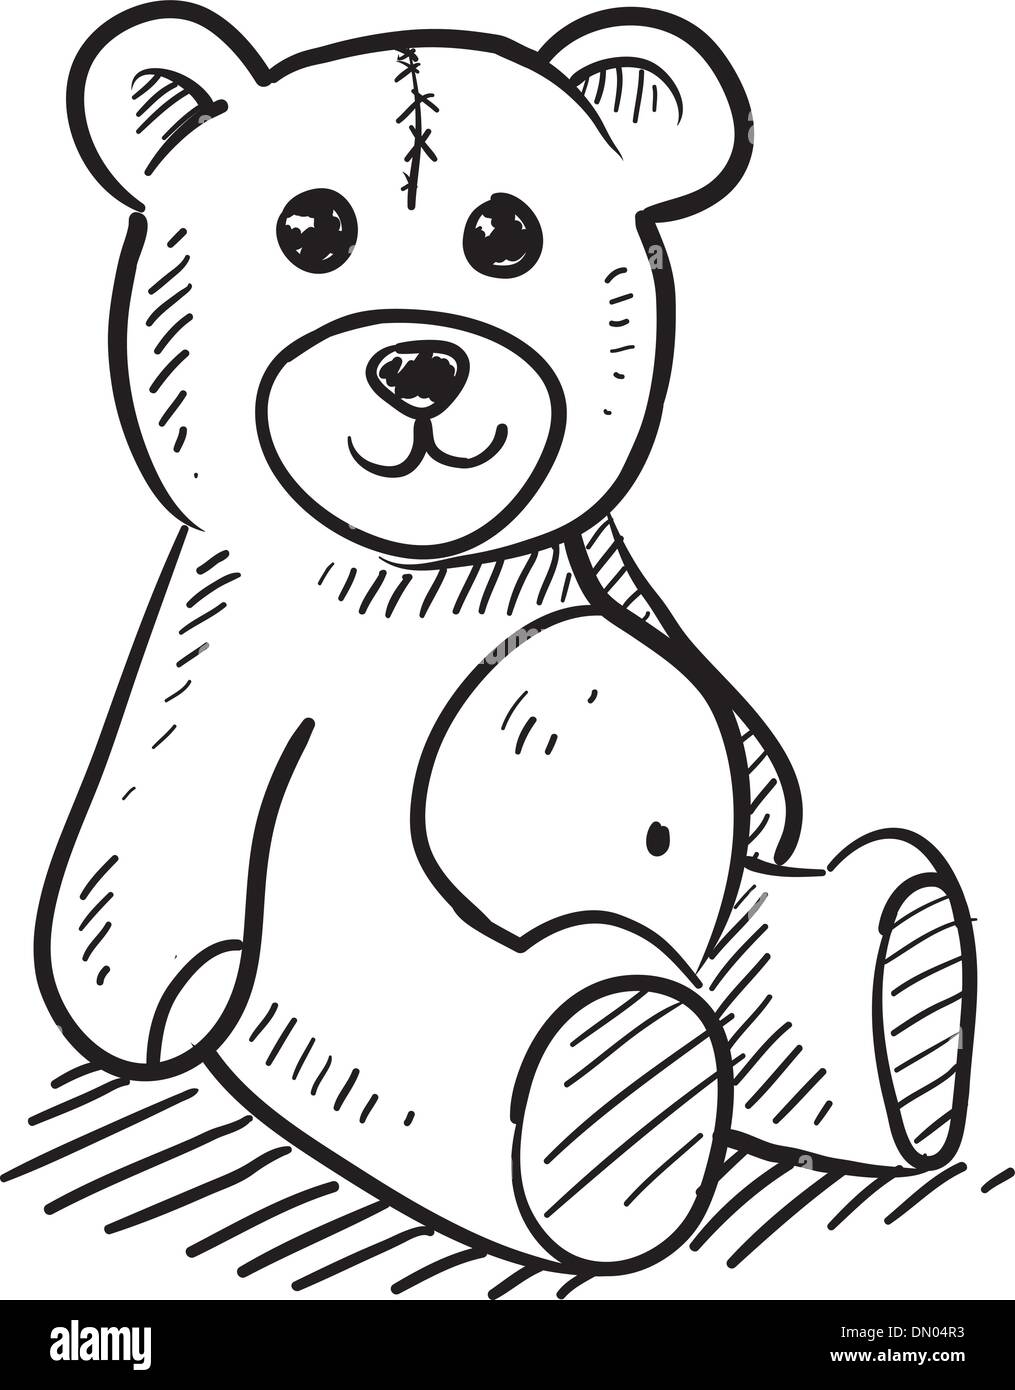 Teddy bear vector sketch Stock Vector